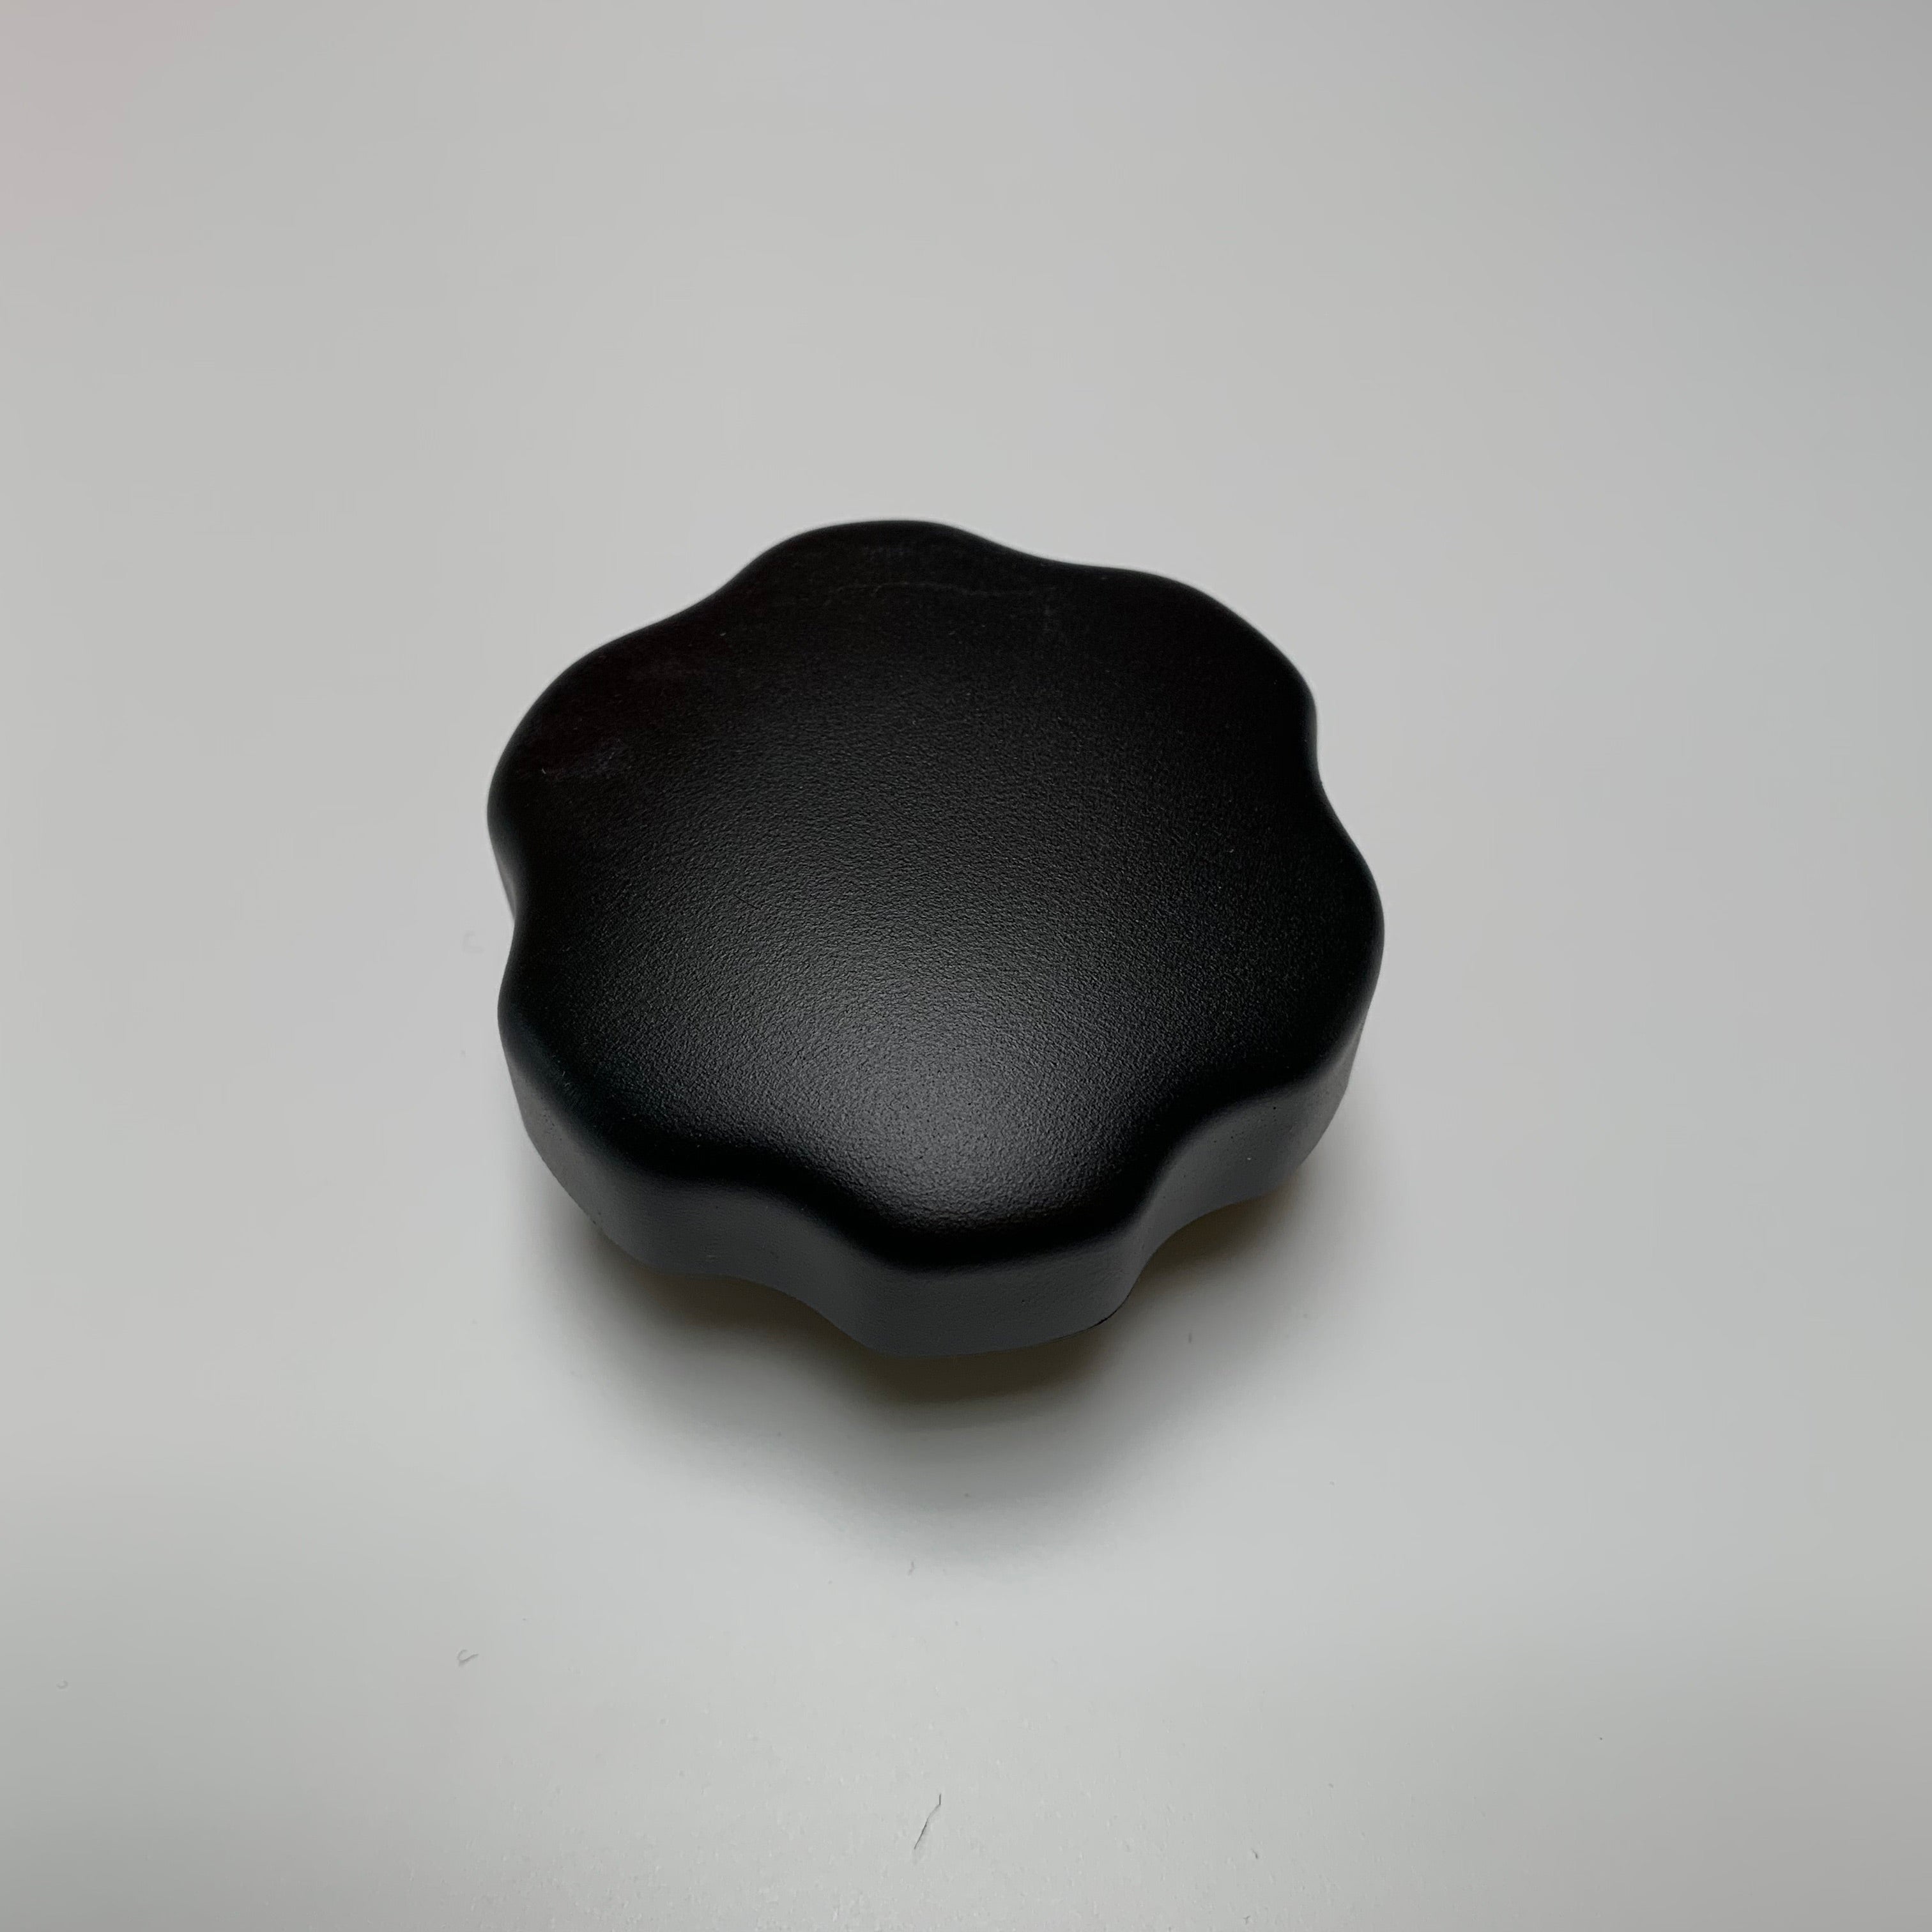 Proform Oil Cap Cover - MK1 Focus ST170 (Plastic Finishes)